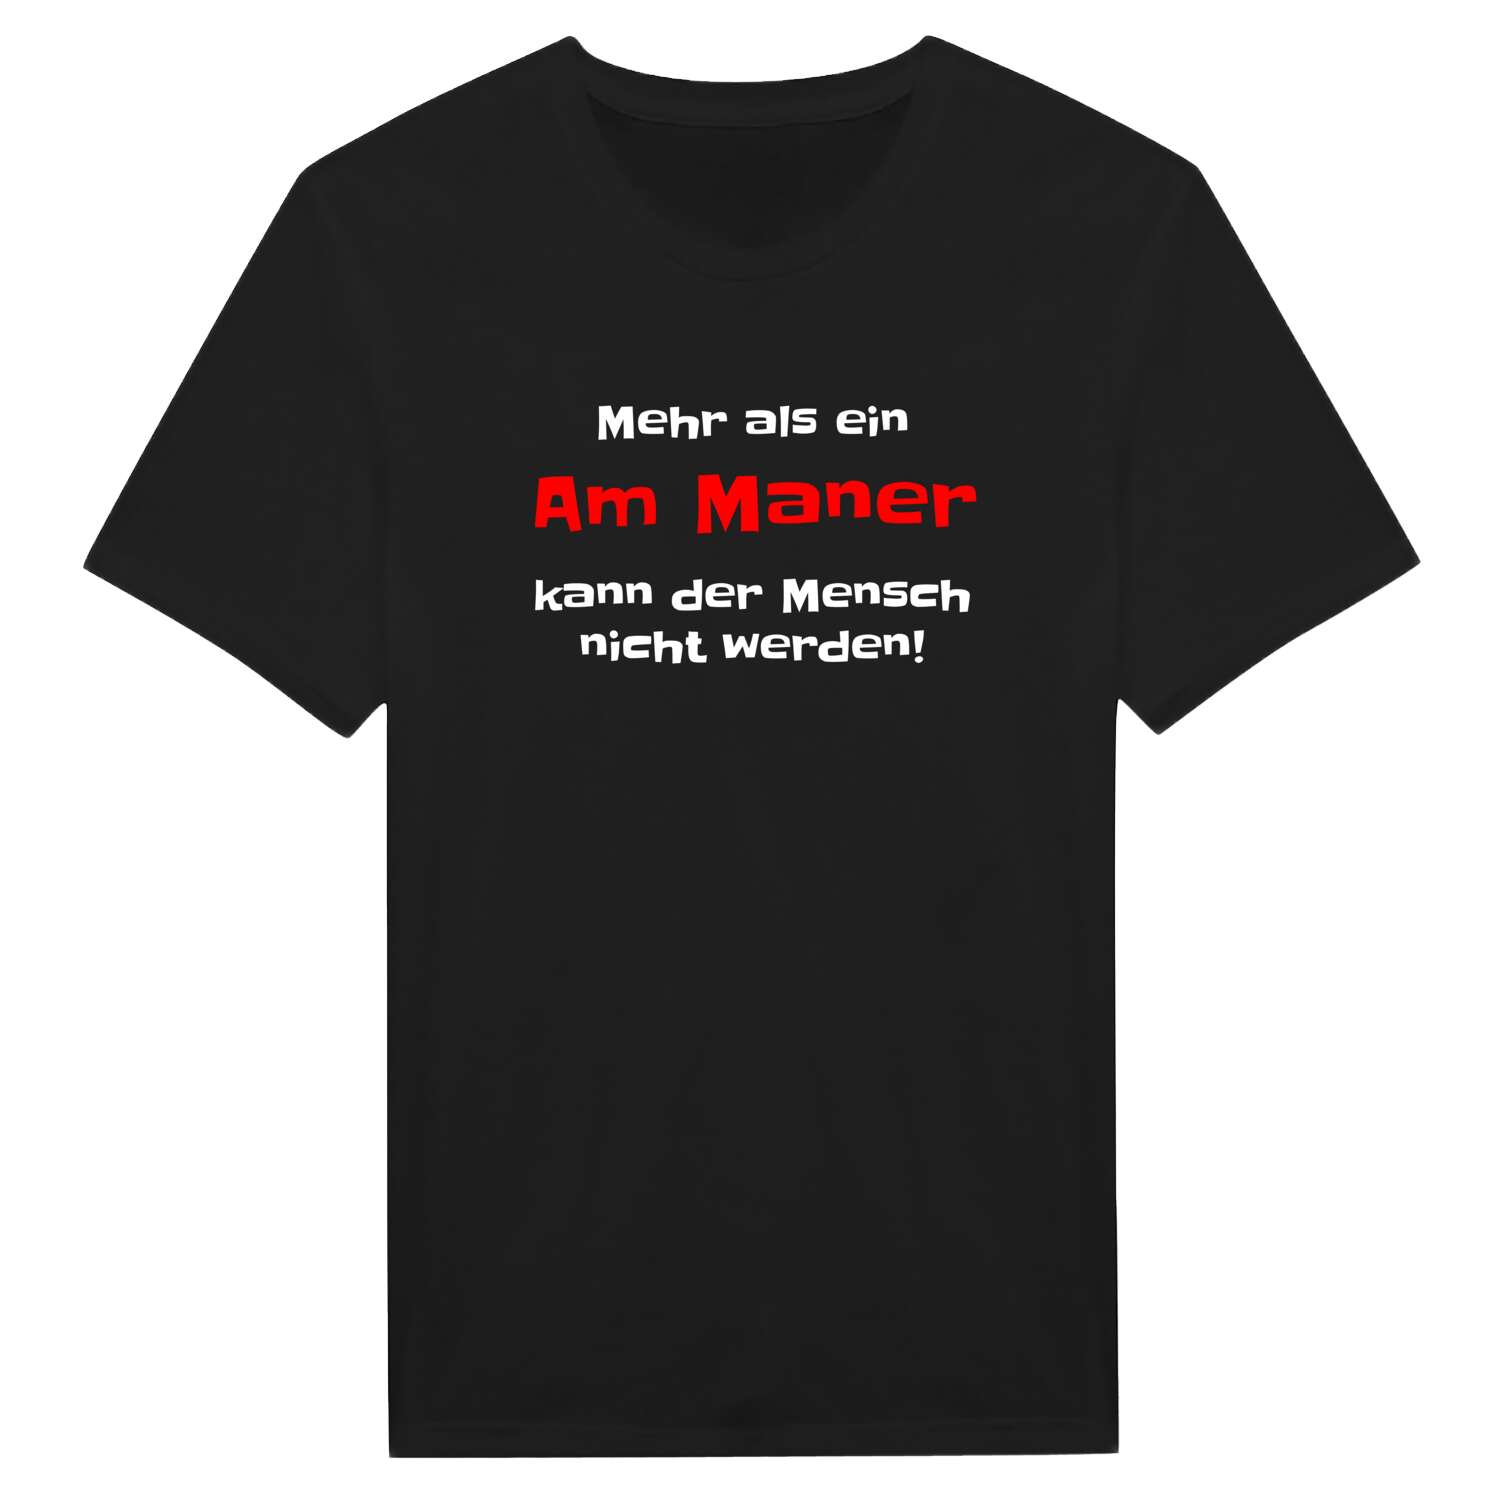 Am Man T-Shirt »Mehr als ein«